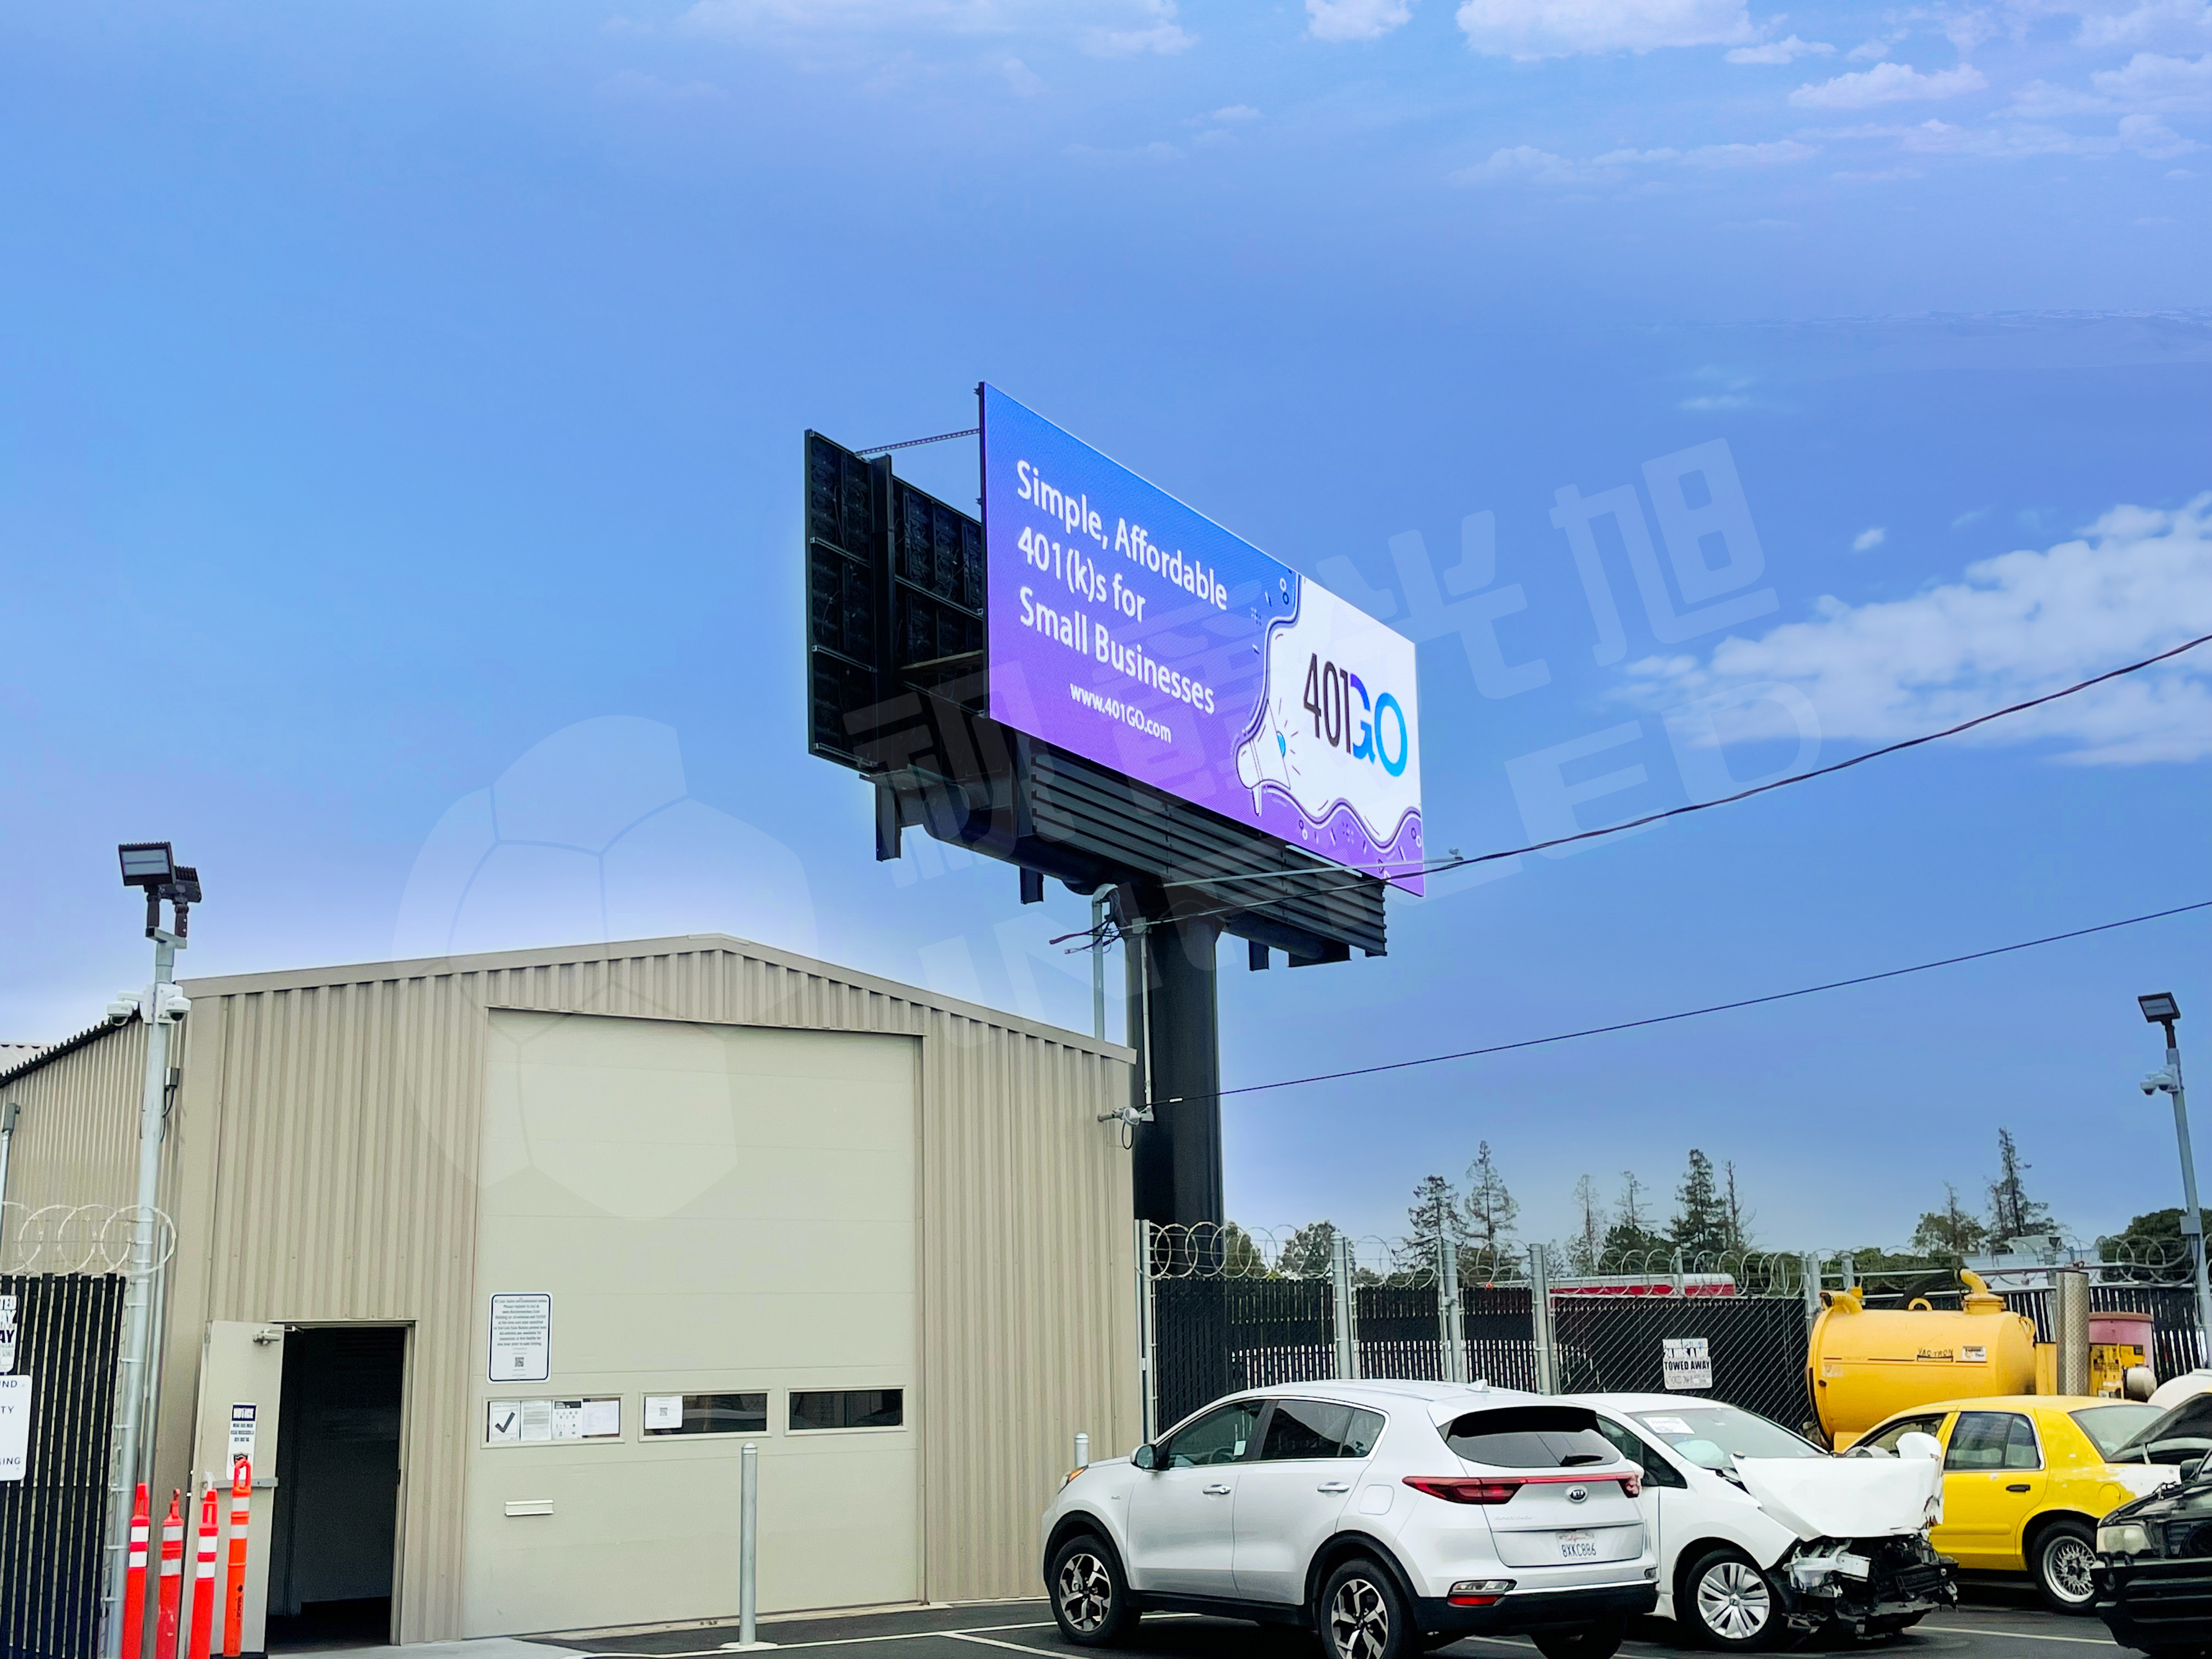 视爵光旭户外LED广告屏幕竖立在美国吉什东路